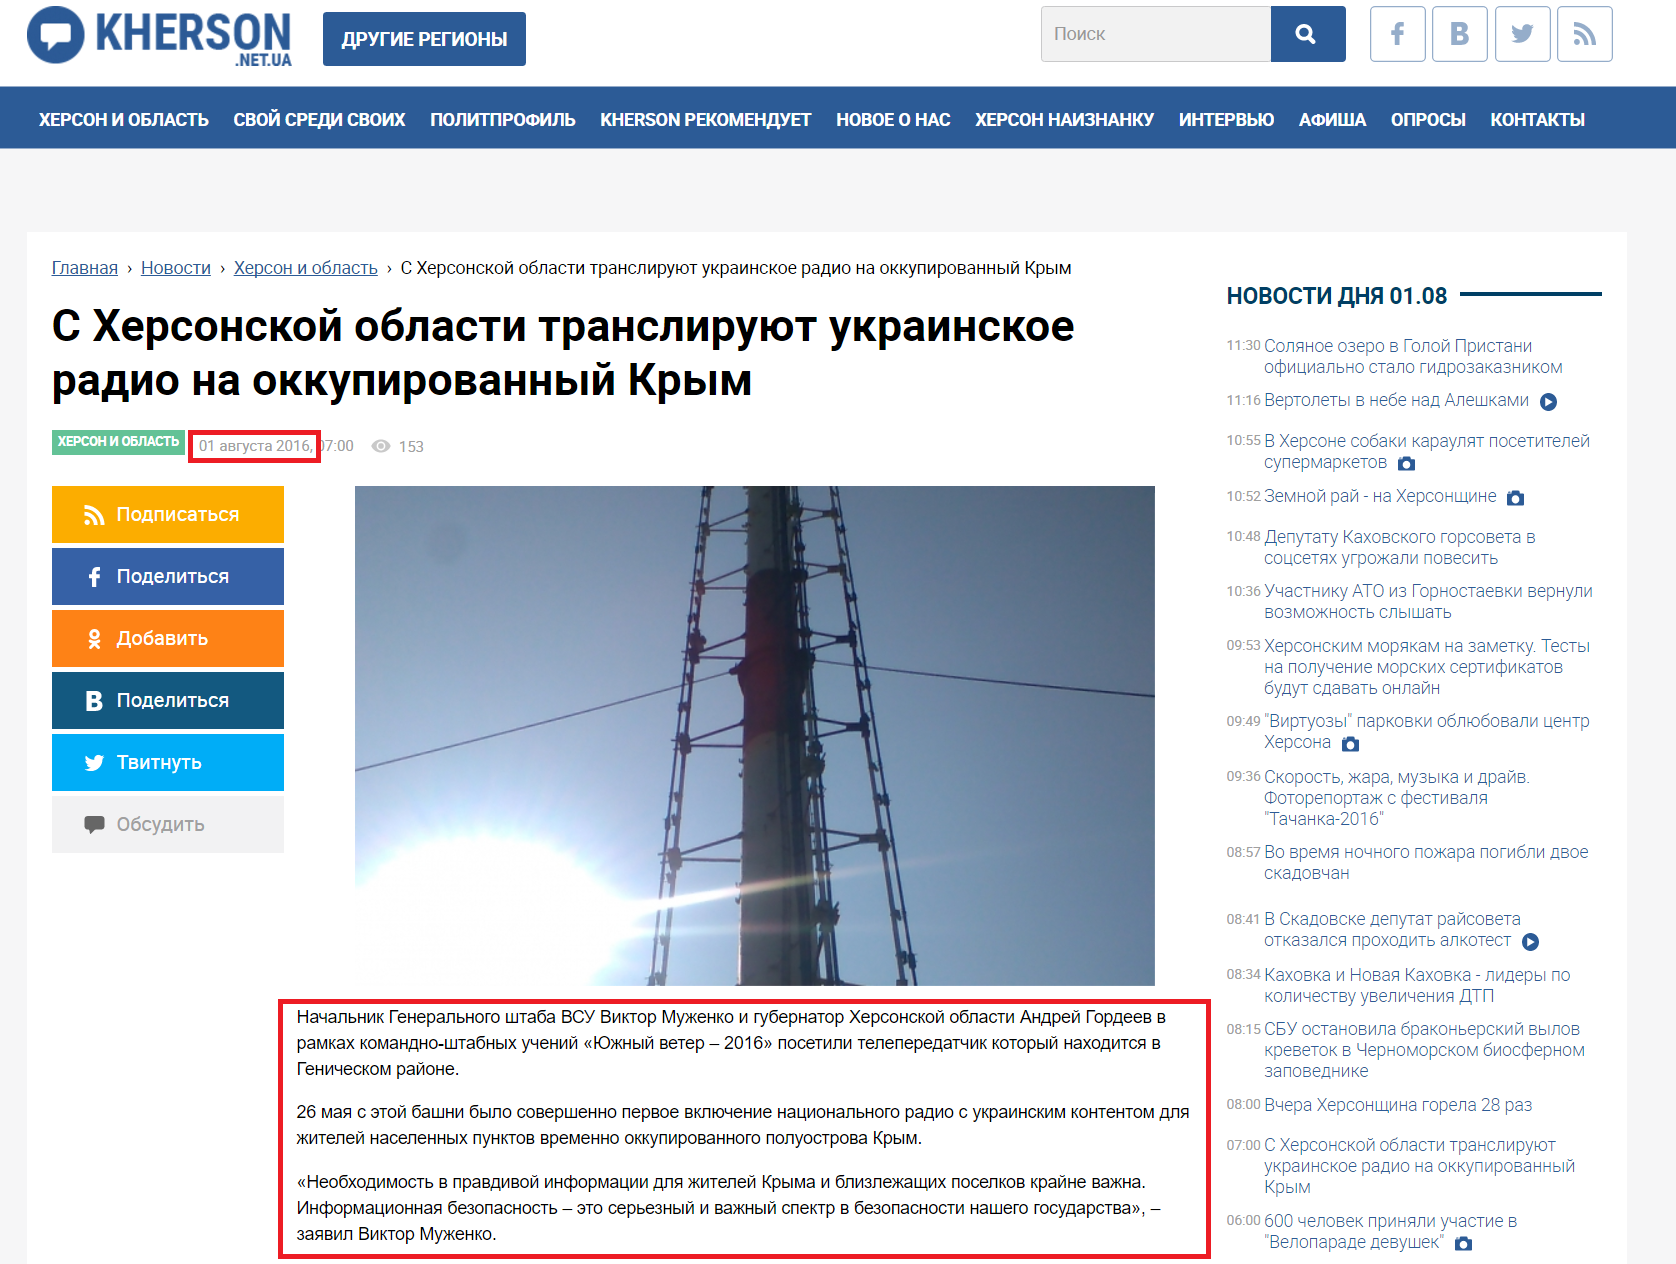 http://kherson.net.ua/news/s-hersonskoj-oblasti-transliruju-ukrainskoe-radio-na-okkupirovannyj-krym